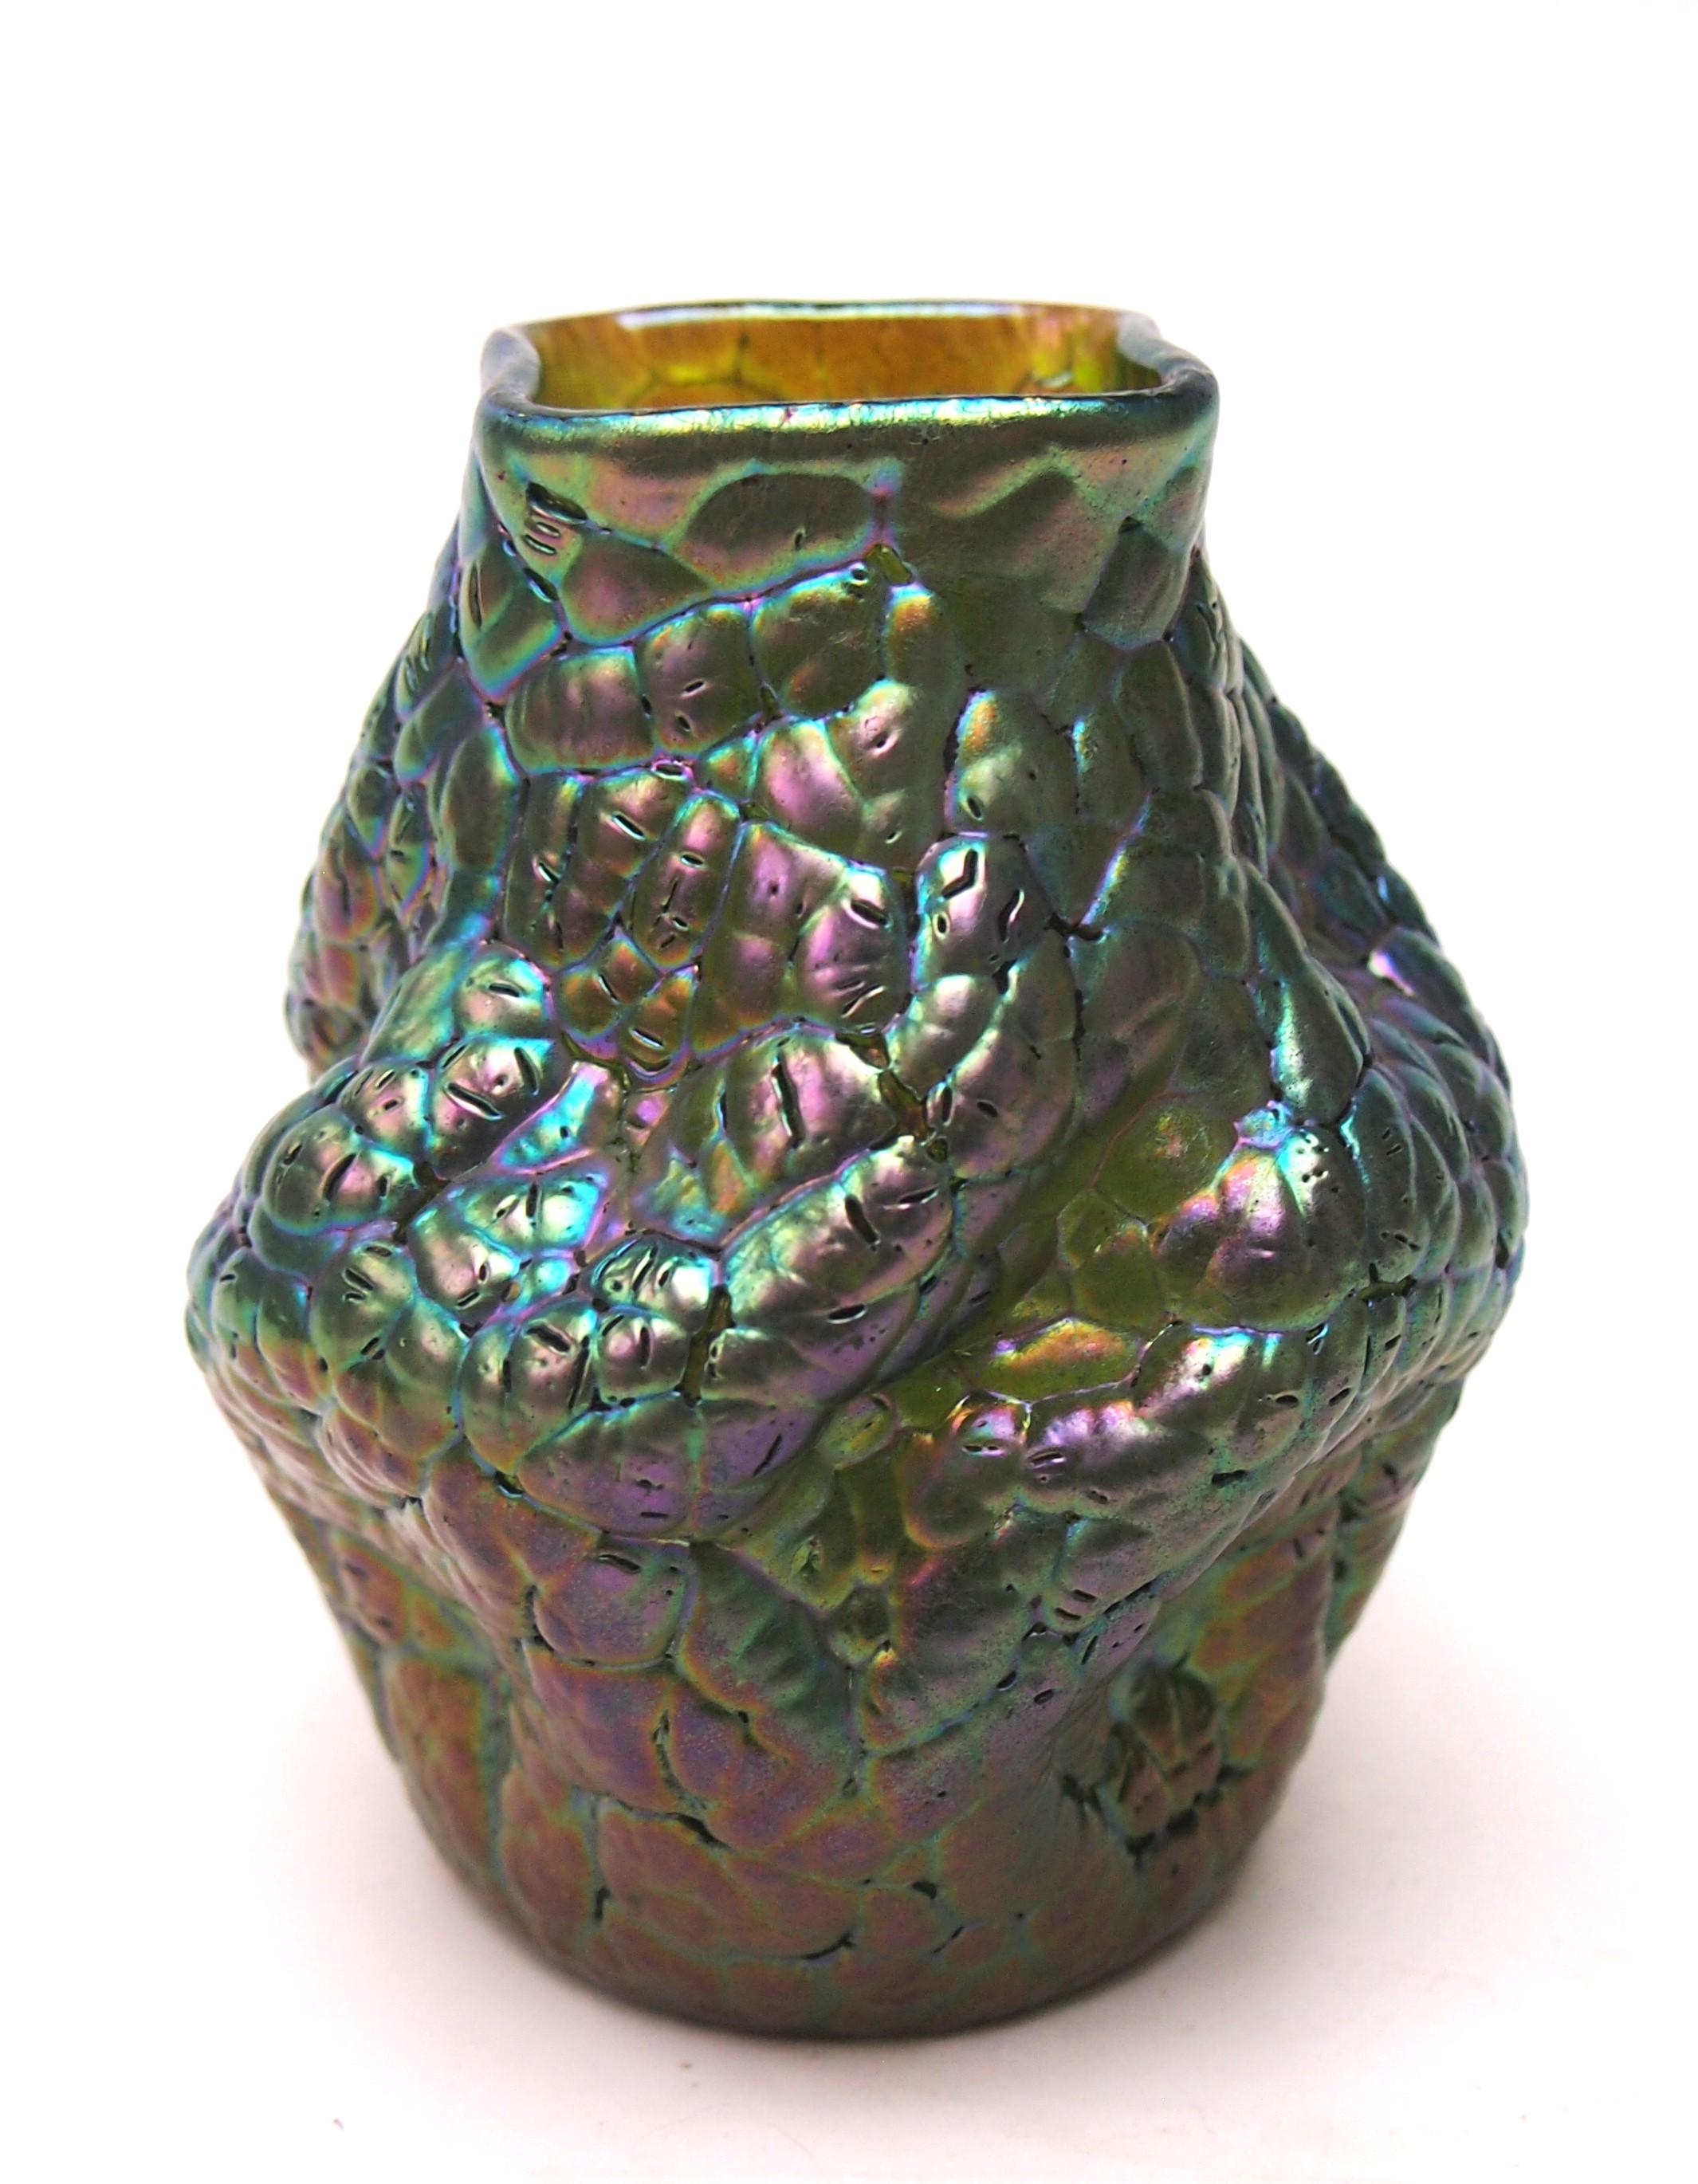 Un superbe vase Loetz Phaenomen entièrement documenté. Cet exemple est documenté en tant que modèle Phaenomen PG 377 et la couleur est appelée Calle (vert) - verre craquelé fusionné avec des granules métalliques marbrés - Ce style est parfois appelé